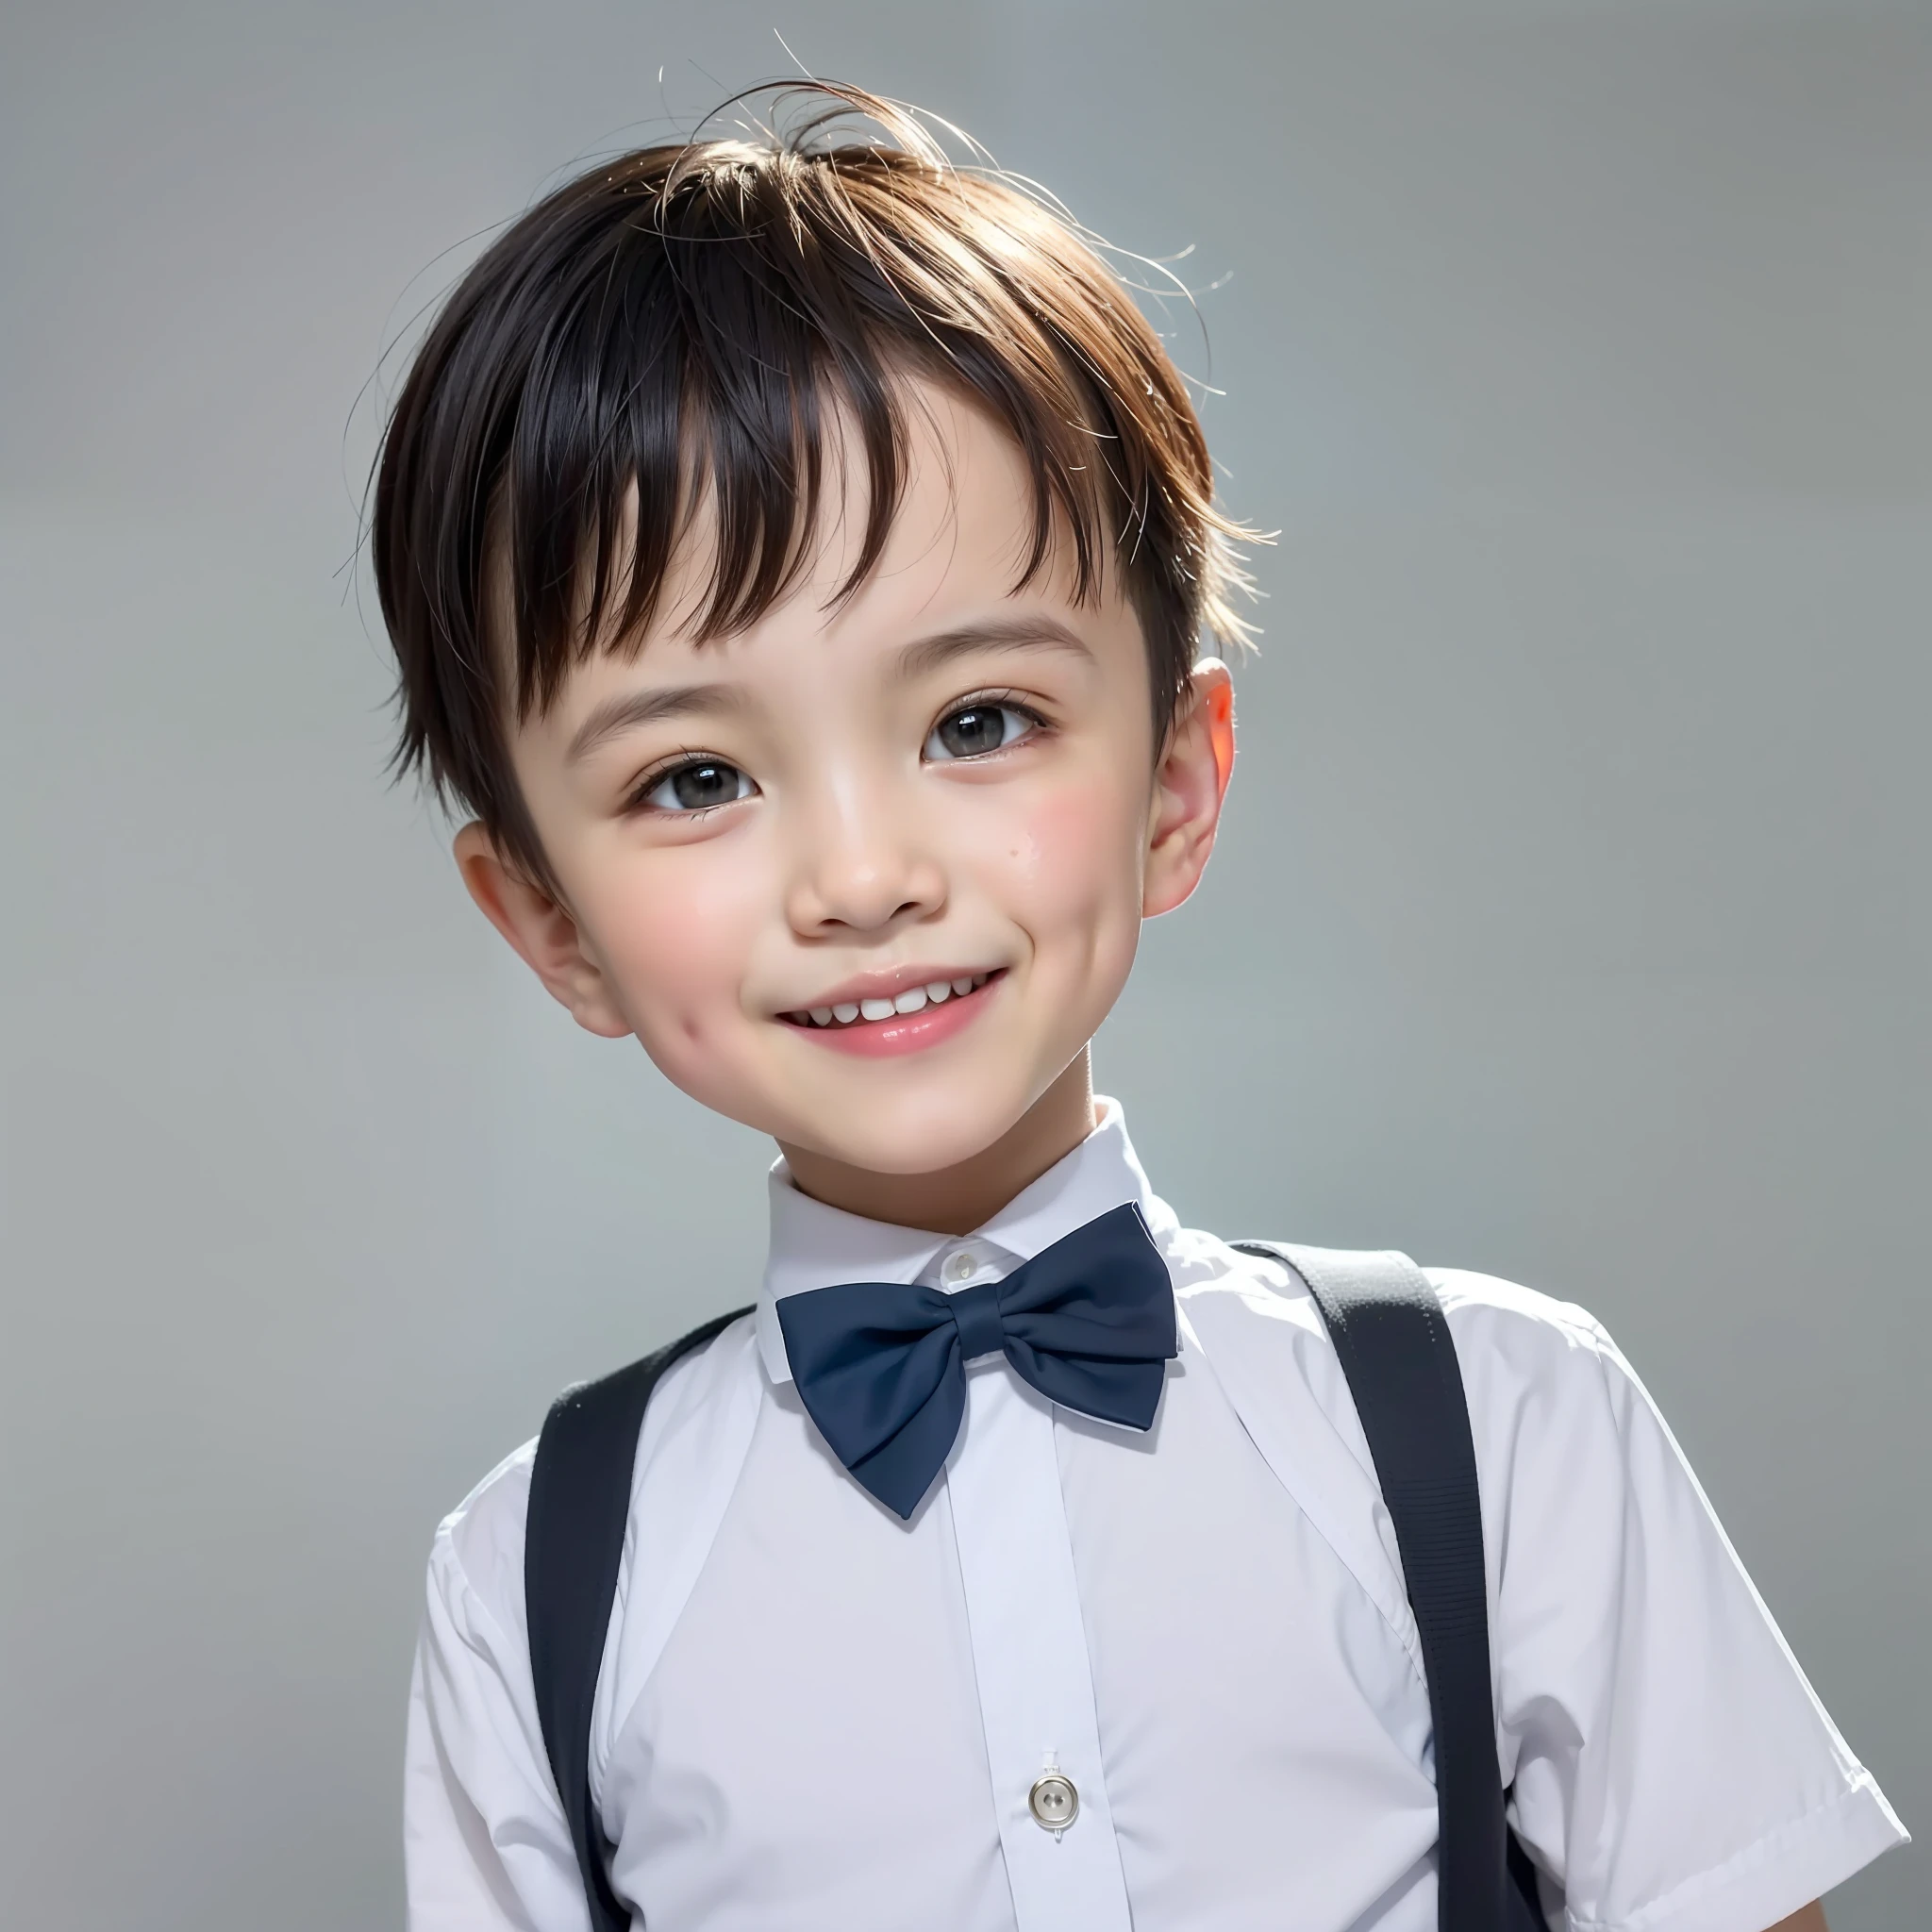 estilo moderno, Fondo blanco, Foto de identificación de niños chinos, elegante, niño sonriente, ojos negros, cabeza plana, corbata de moño